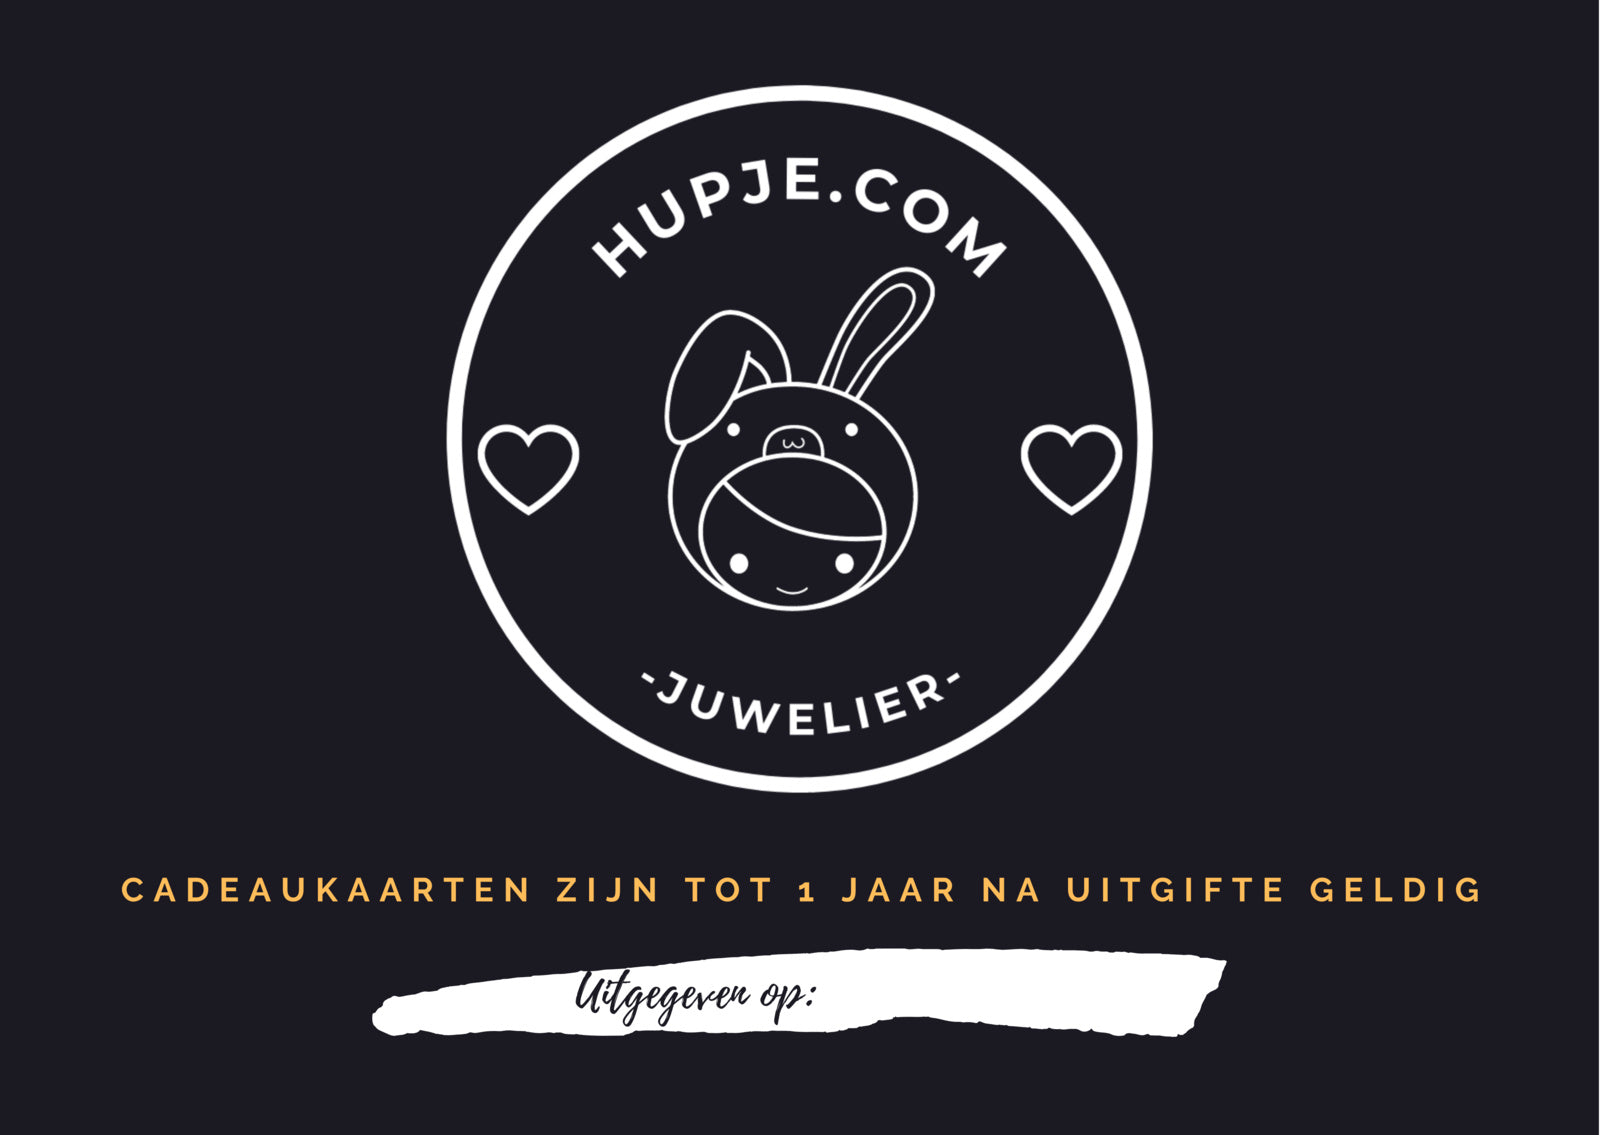 Gift voucher for jeweler Hupje.com € 10.00 - € 100.00